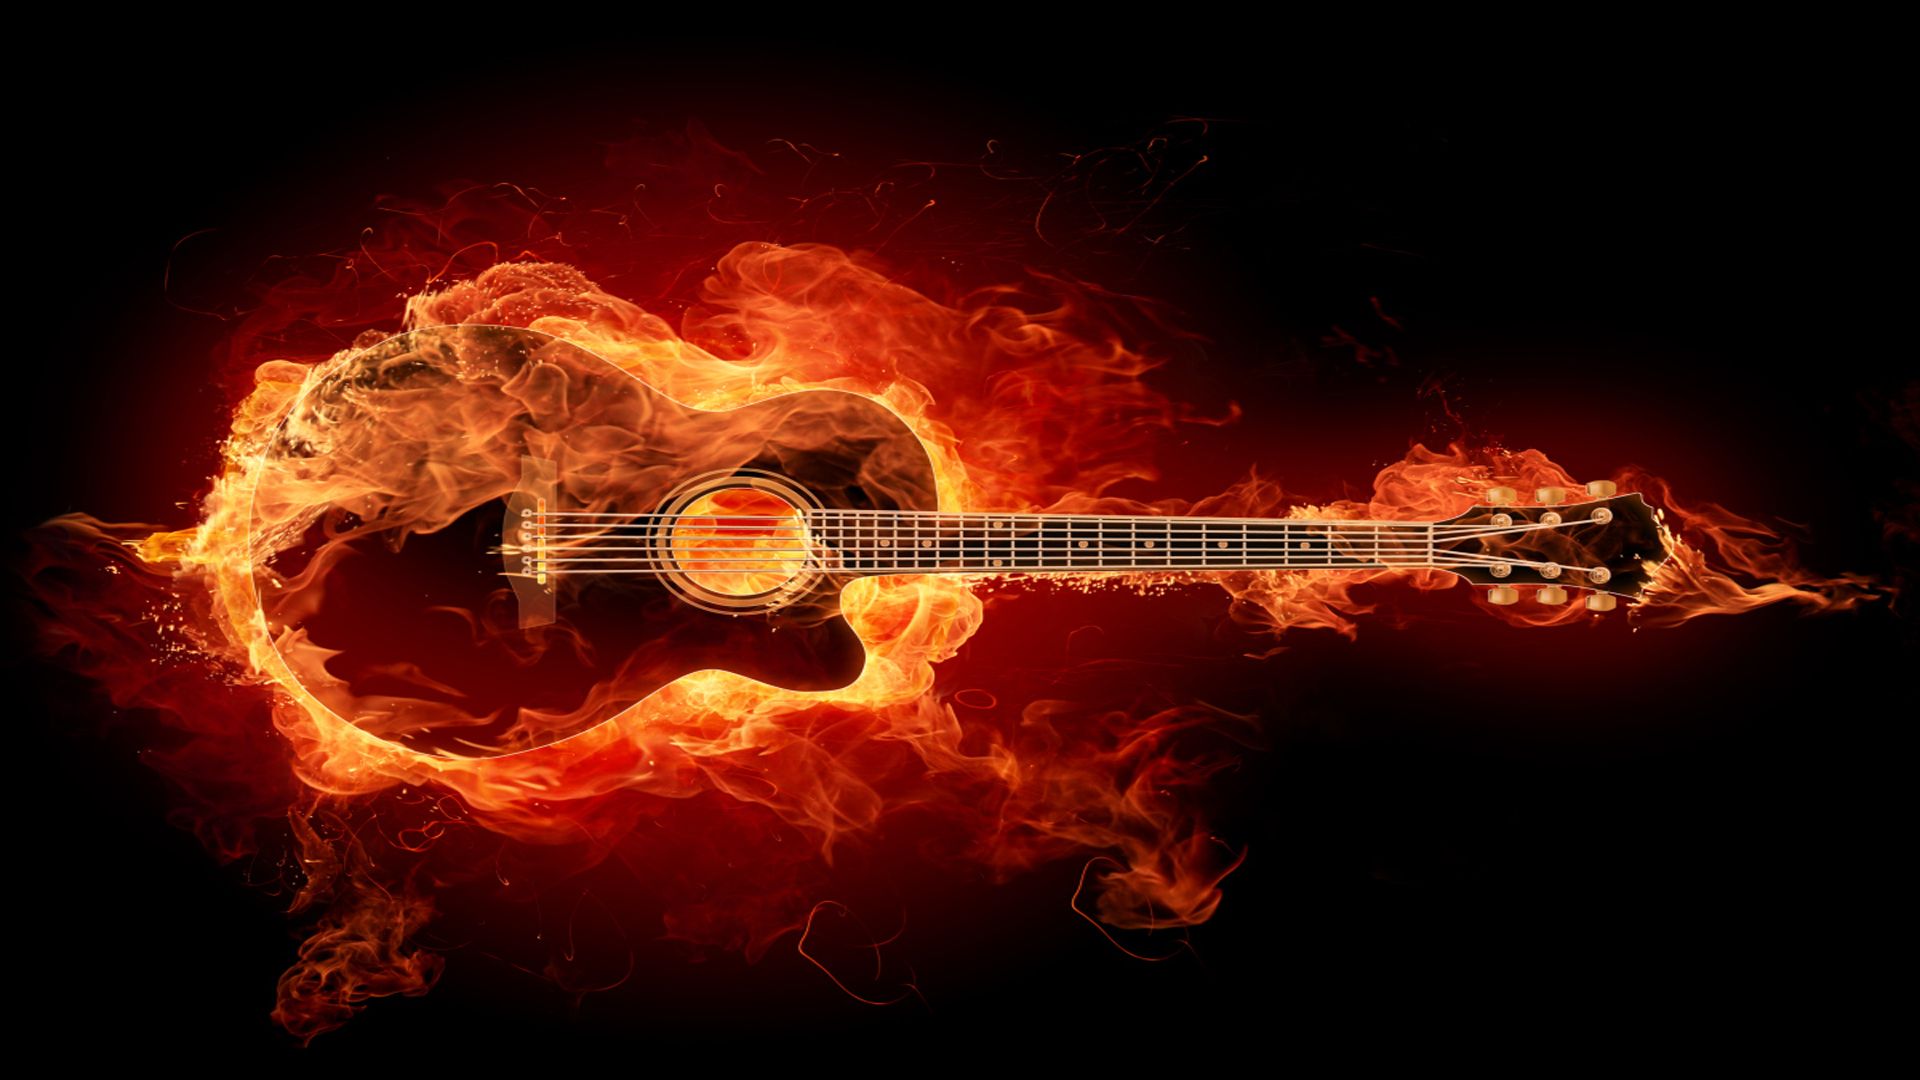 Guitar In Flames Wallpaper Hard Rock Music